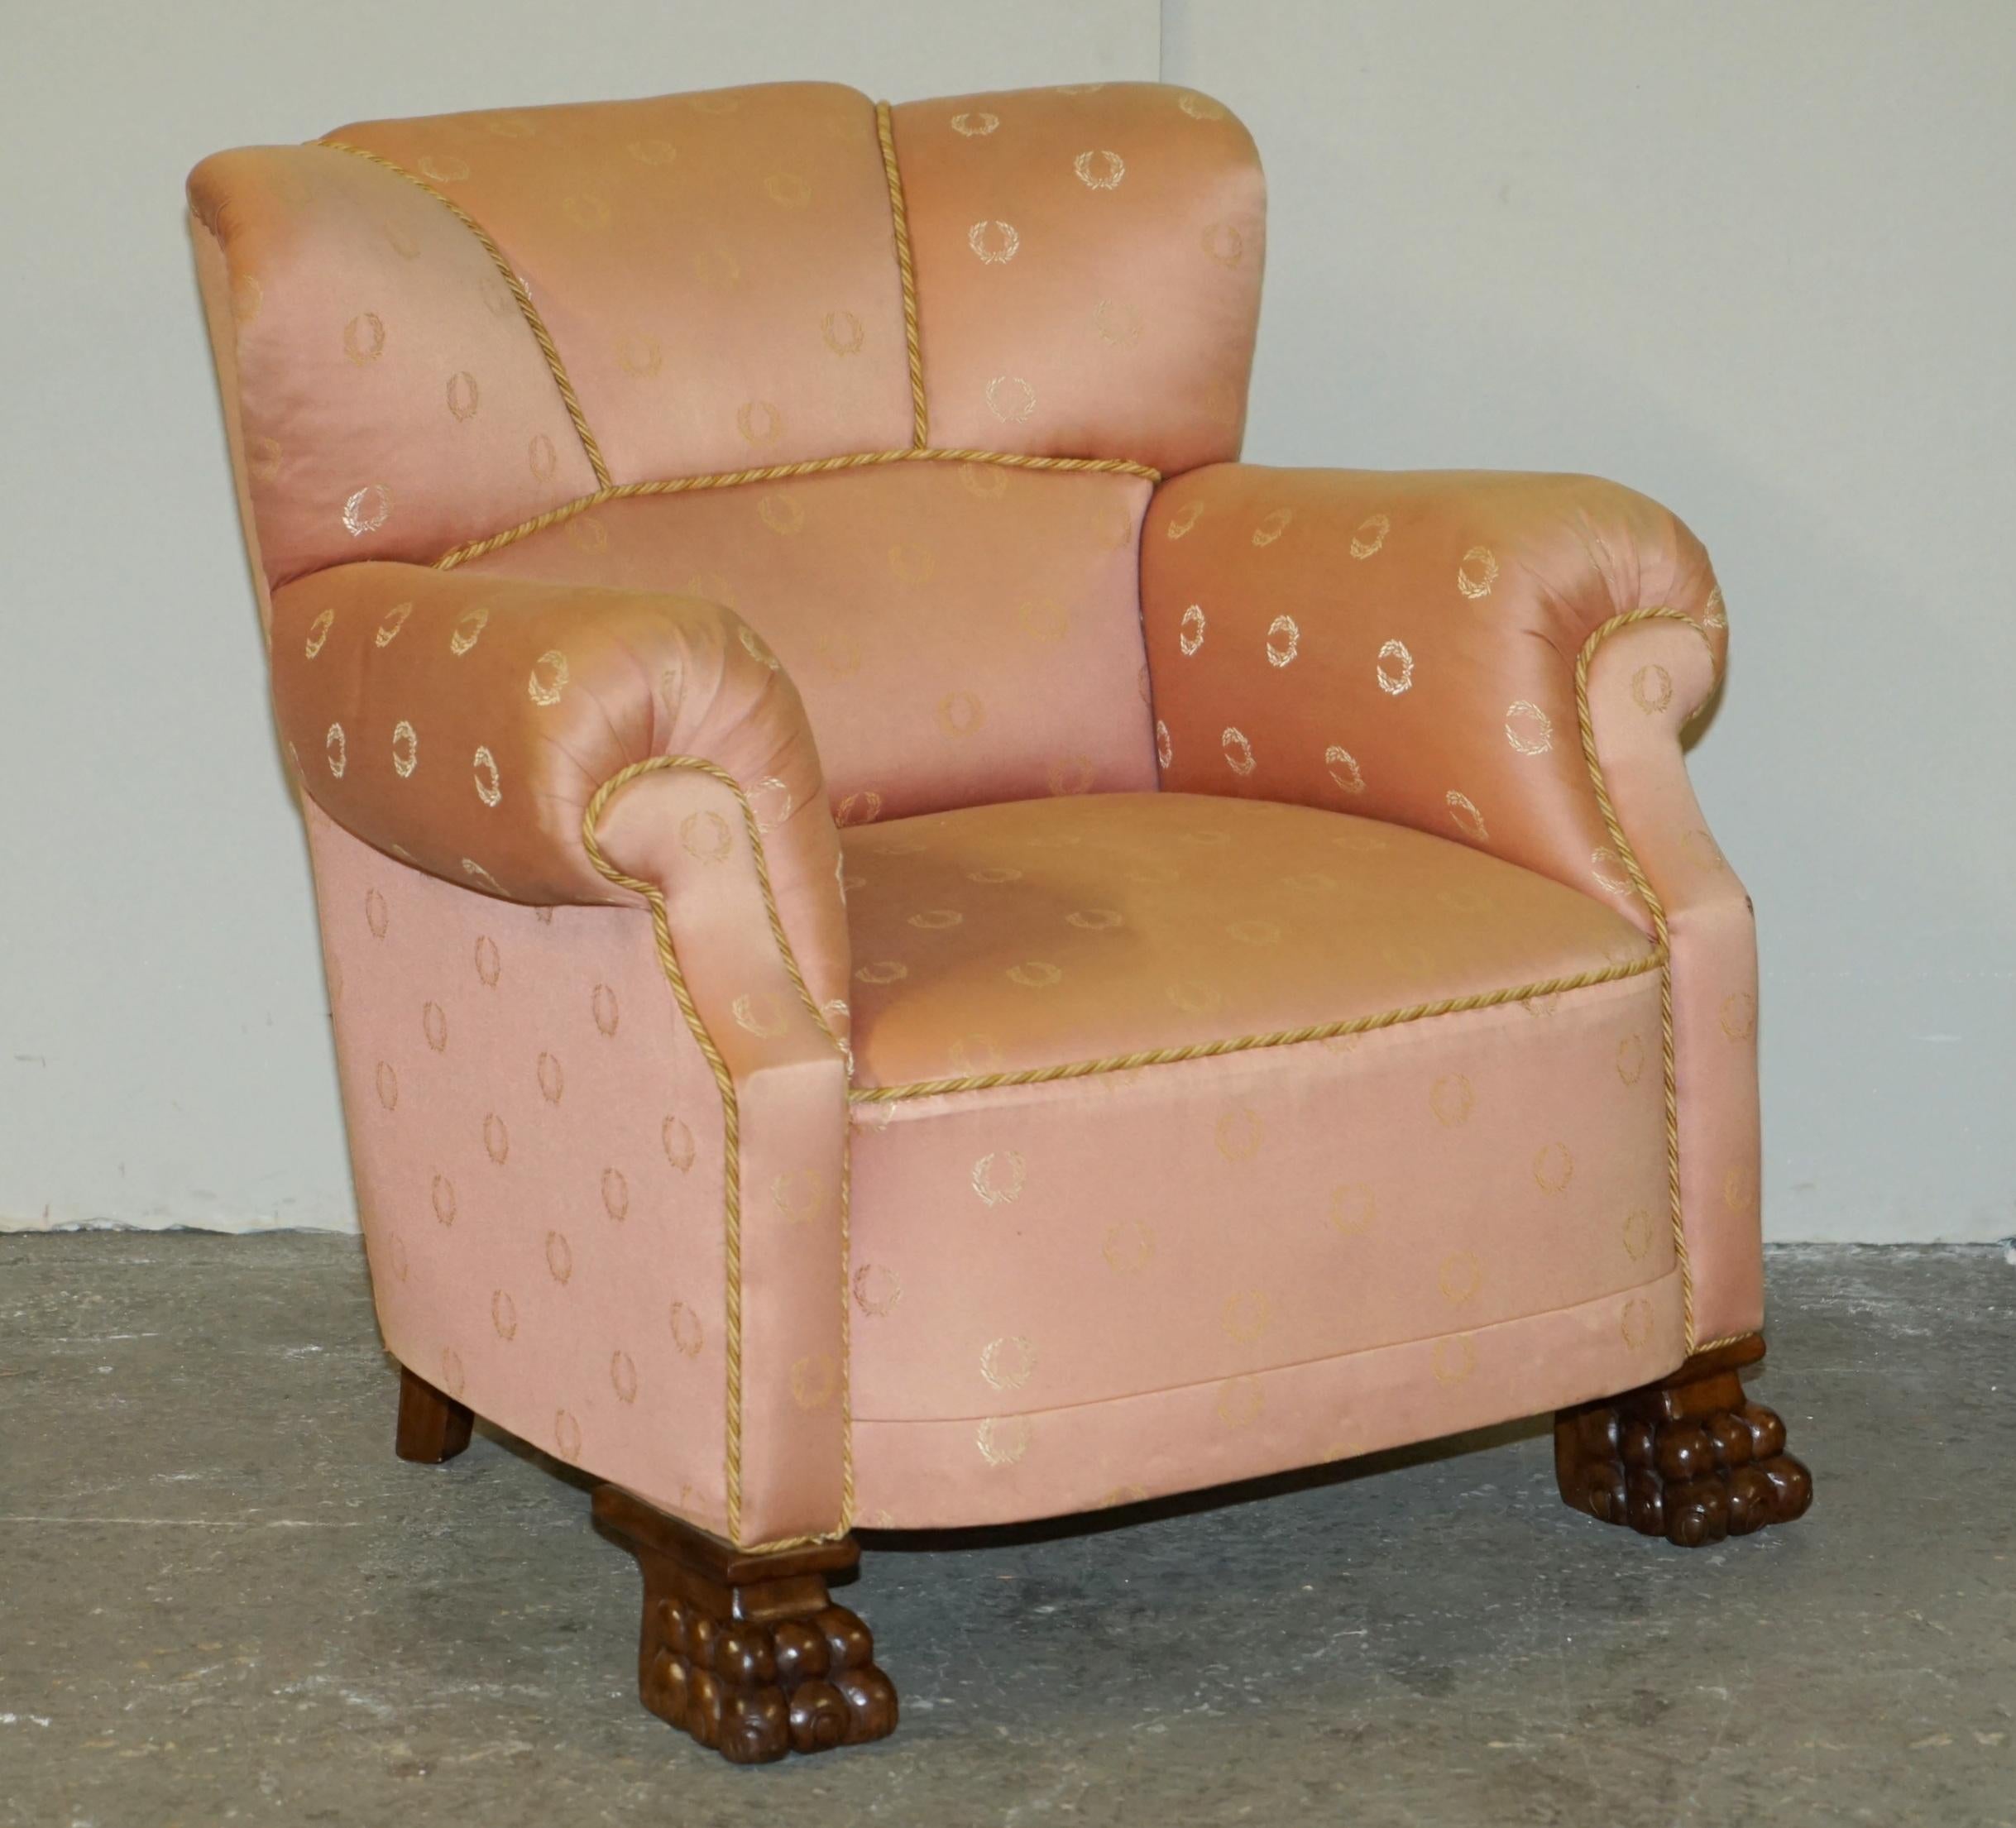 The House Antiques a le plaisir de proposer à la vente cette ravissante paire de fauteuils club Art Deco originaux, tapissés en rose saumon, avec des pieds en patte de lion sculptés à la main. 

Une paire de fauteuils à ressorts hélicoïdaux très